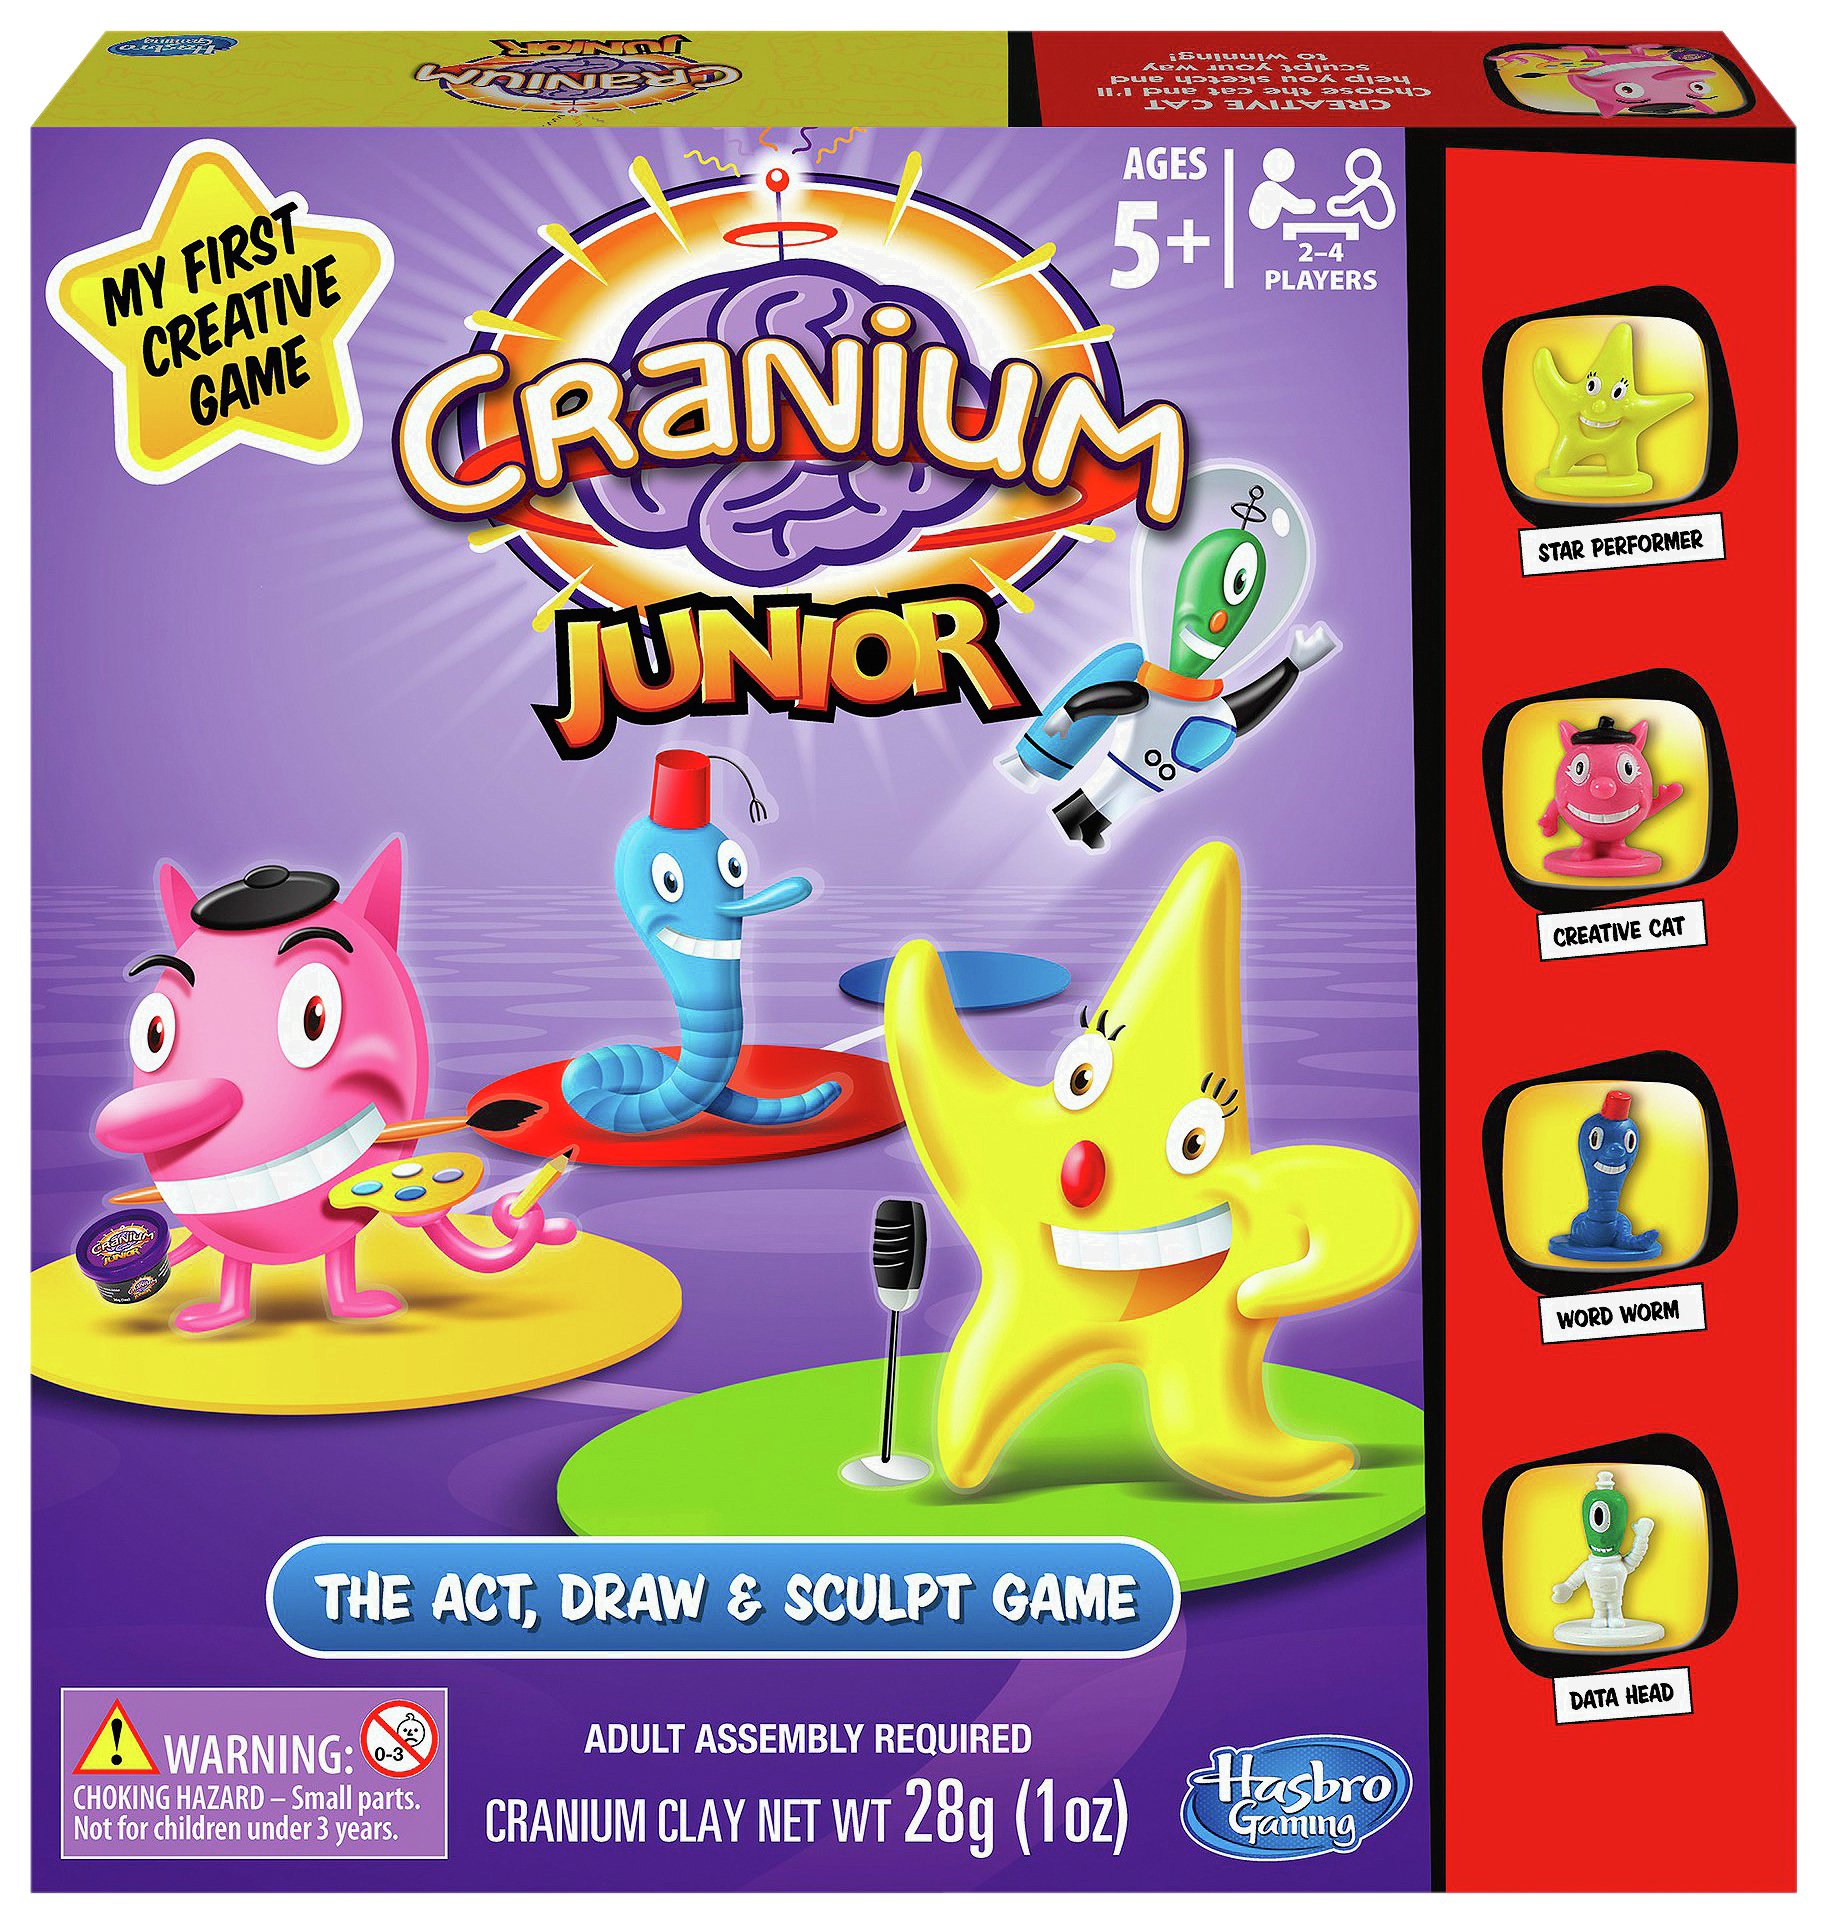 Cranium Junior from Hasbro Gaming